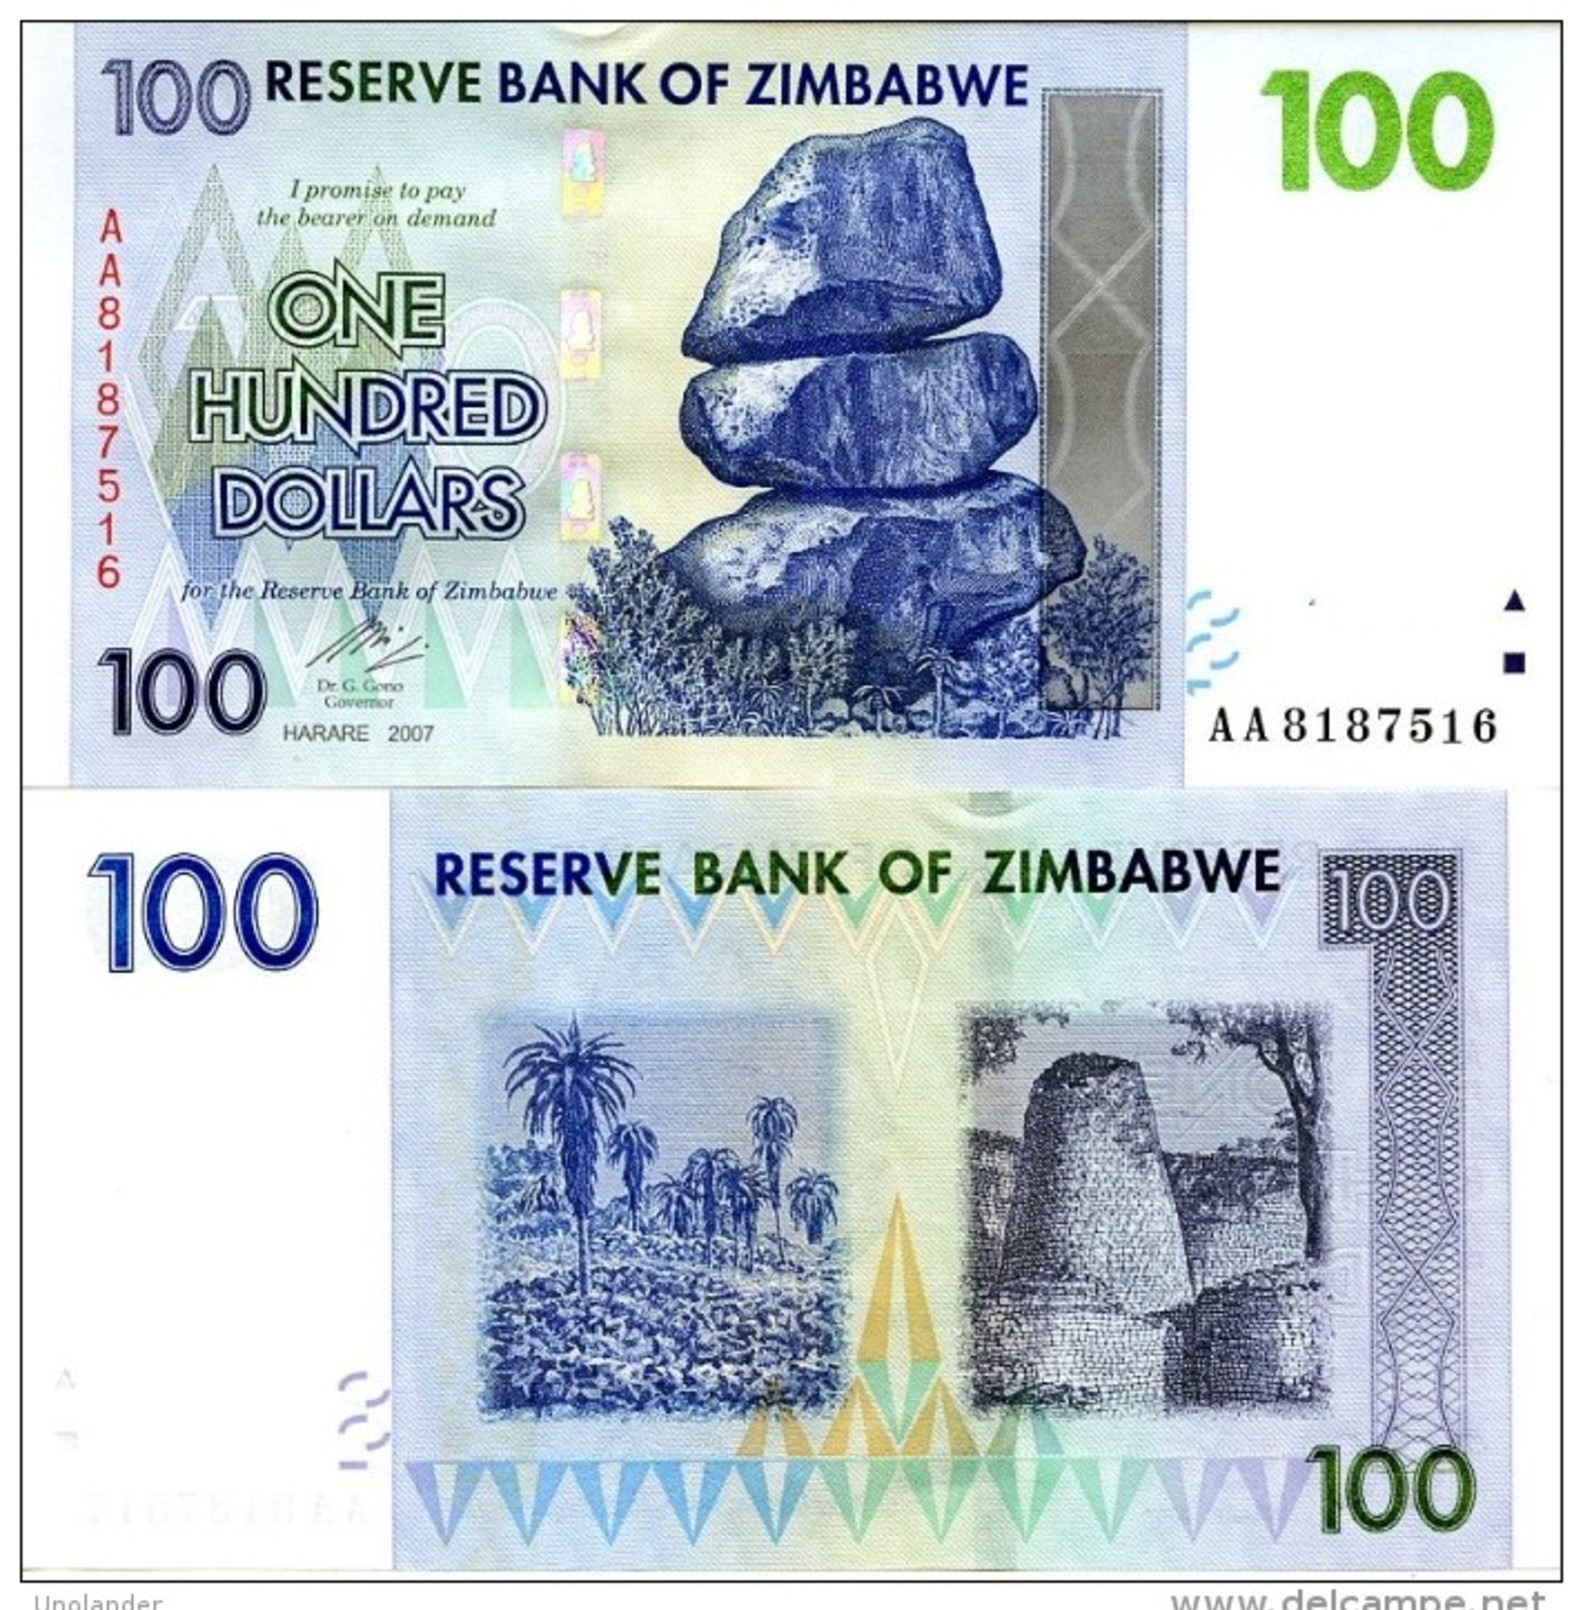 ZIMBABWE 100 Dollars 2007 P 69 UNC - Zimbabwe